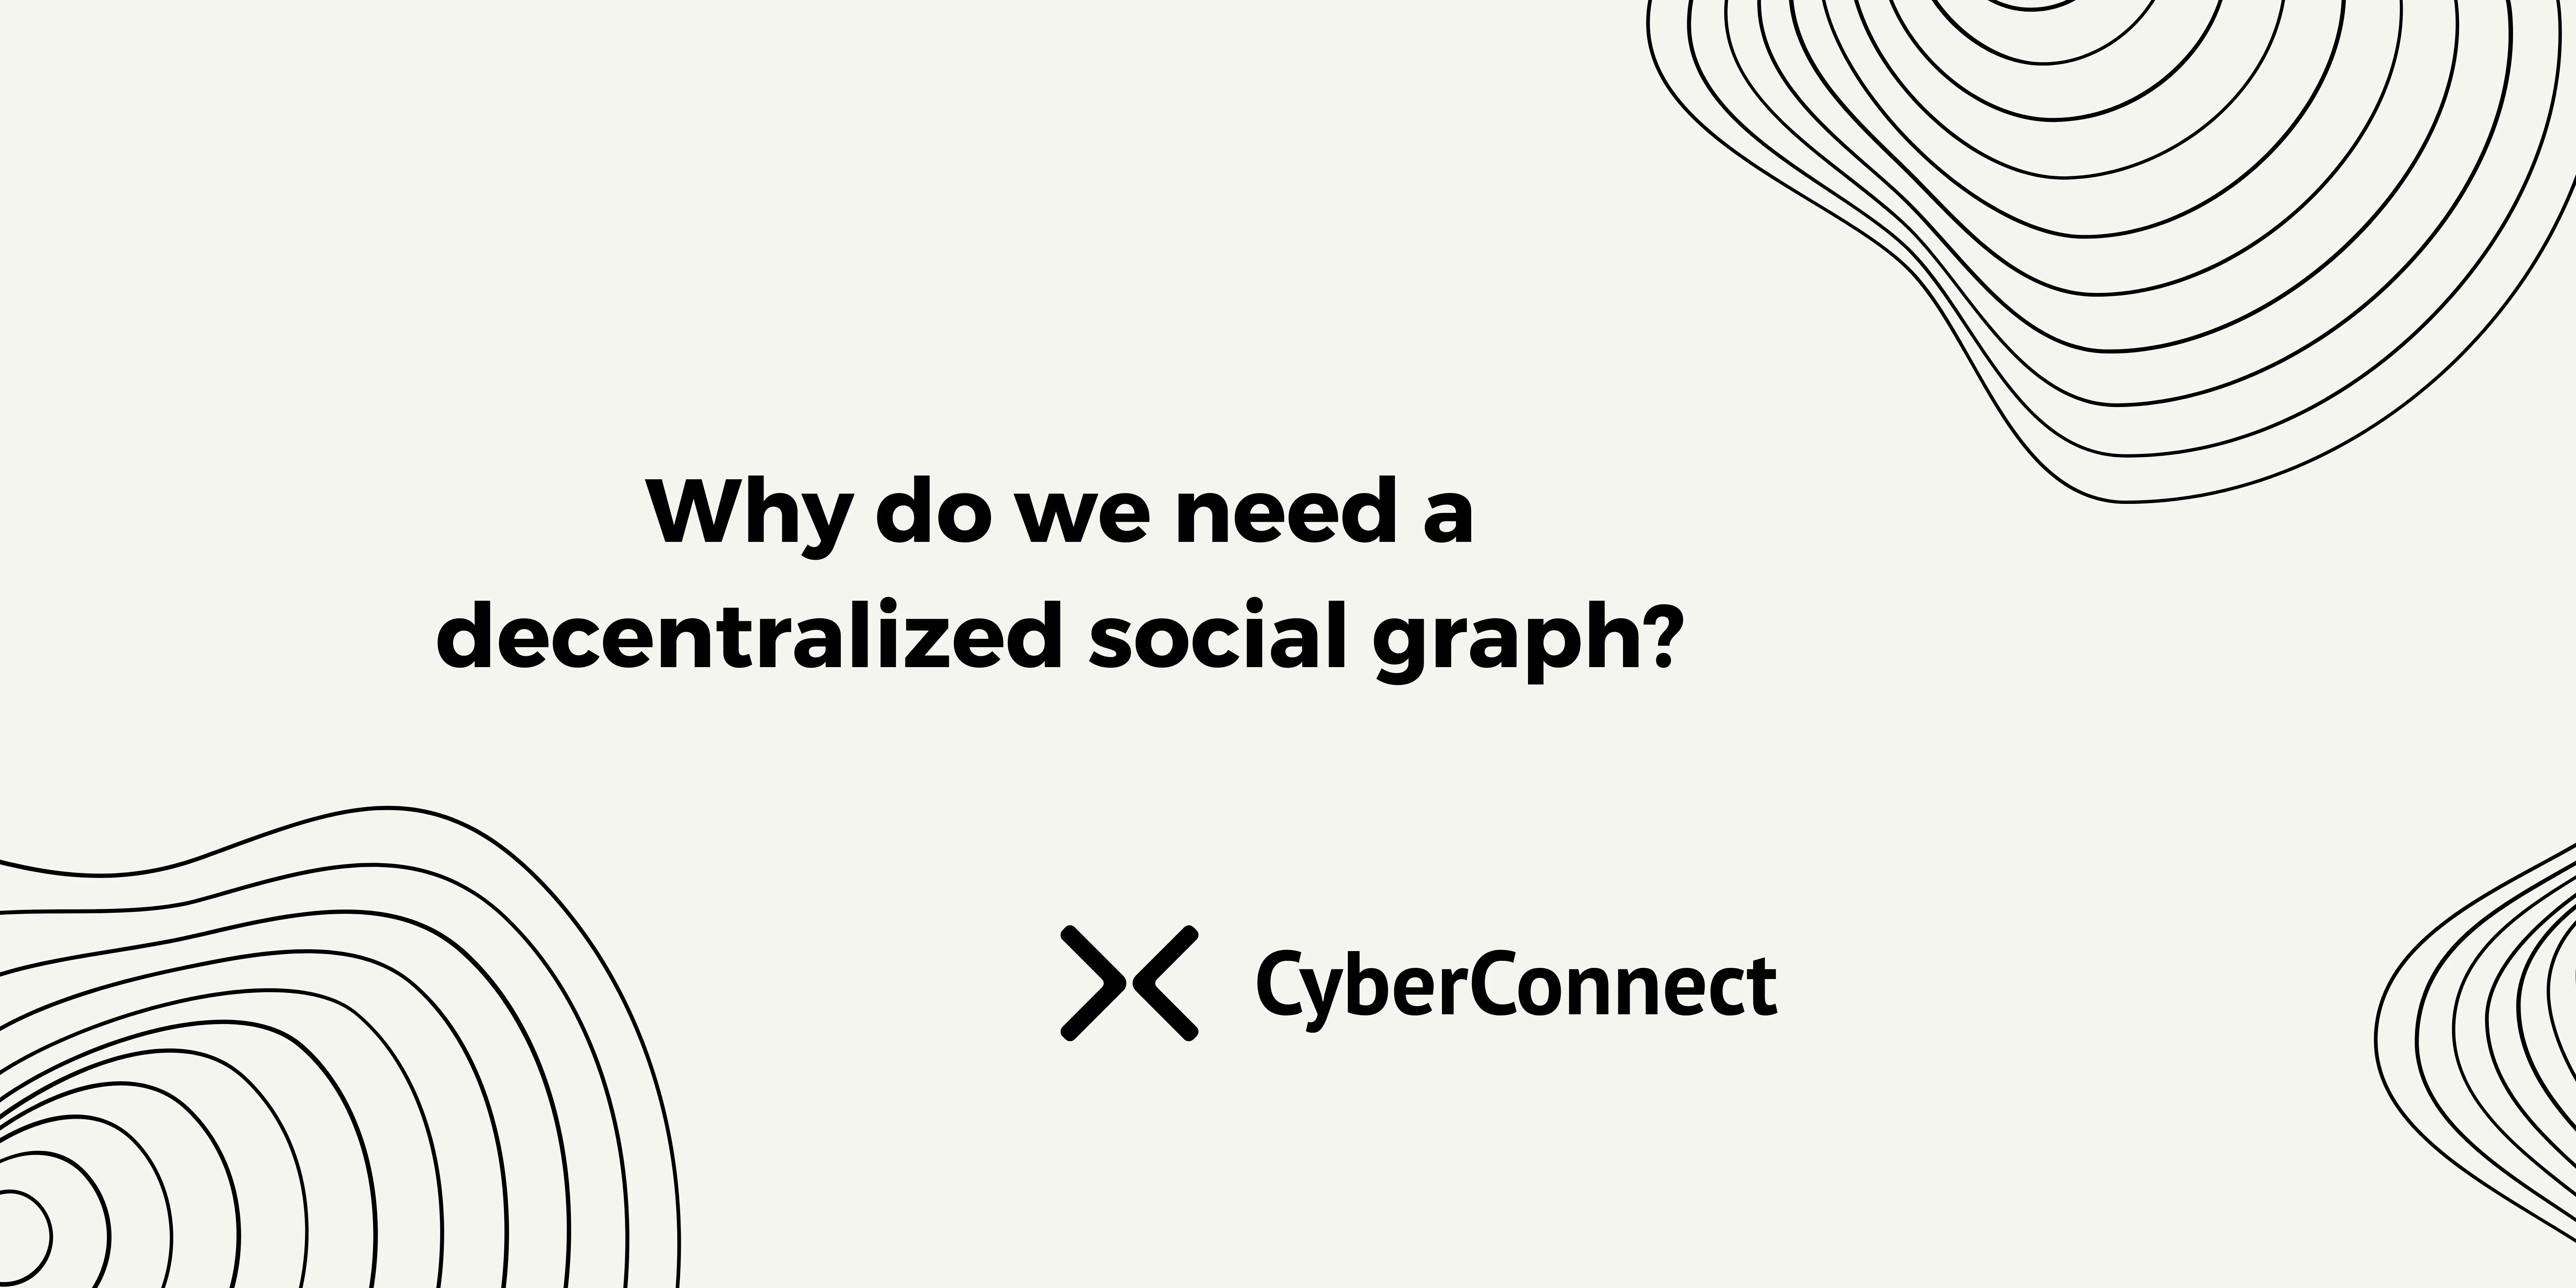 Multicoin Capital领投，「CyberConnect」正为Web3居民构建去中心化社交图谱